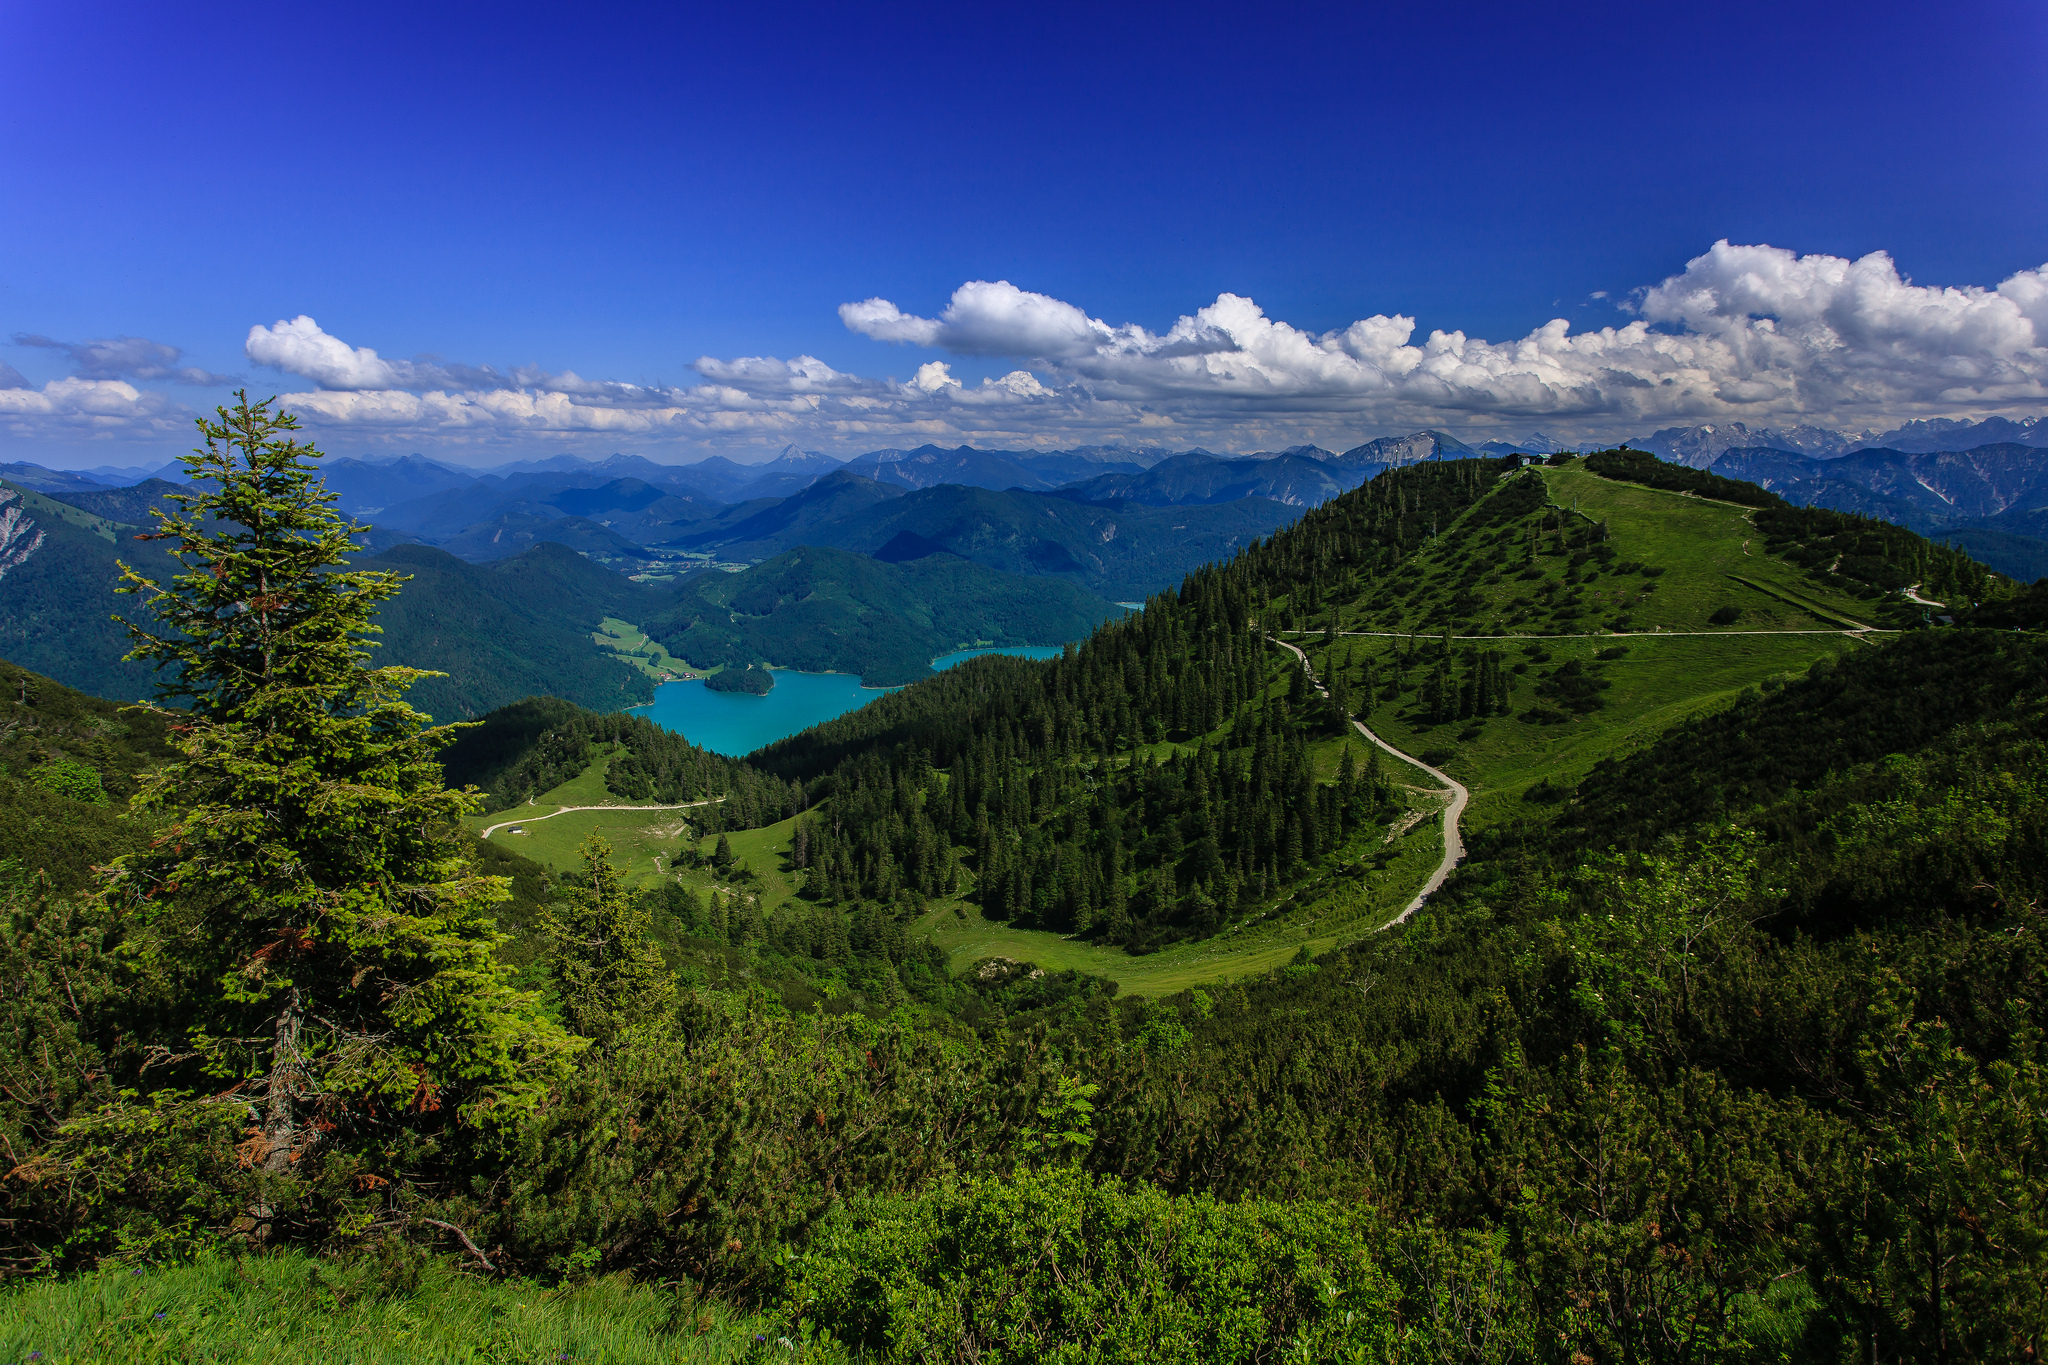 Скачать обои Баварские Альпы на телефон бесплатно